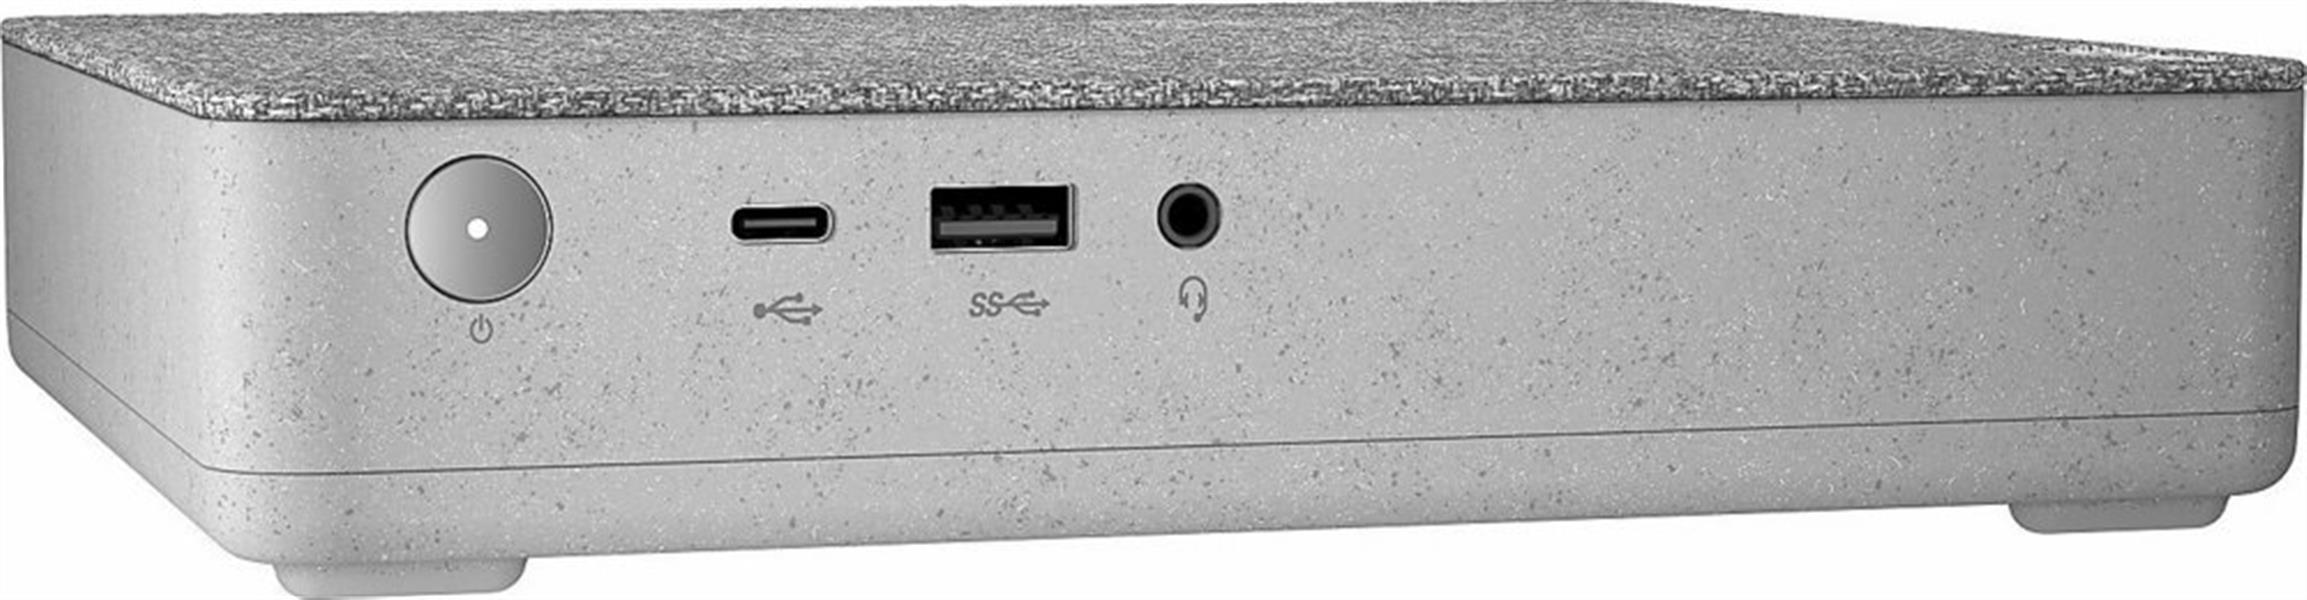 Lenovo IdeaCentre Mini 5 / I3-10100T/ 8GB / 512GB / W10 PRO